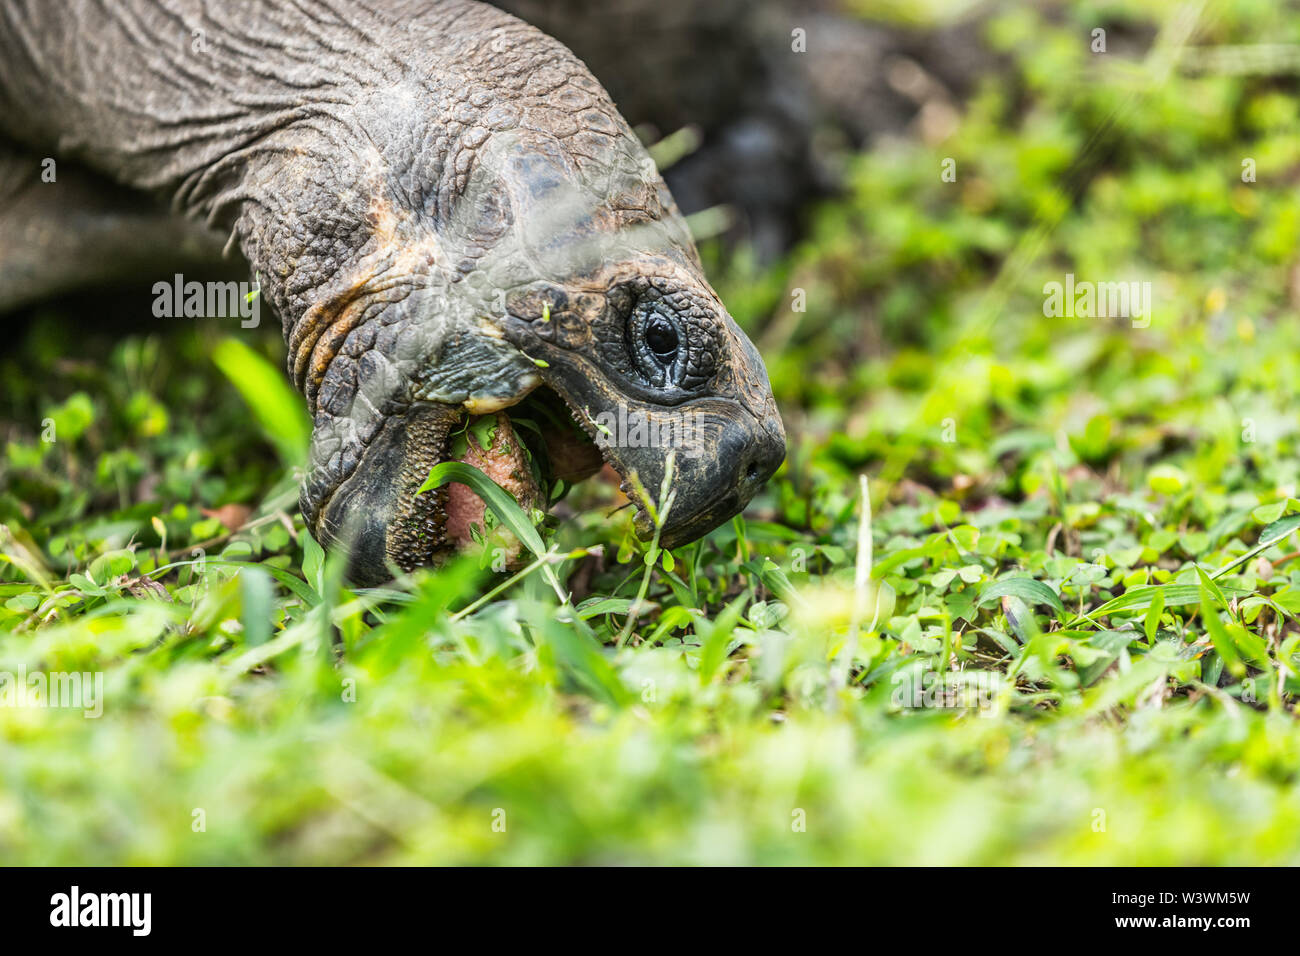 Galapagos Schildkröte essen Gras auf der Insel Santa Cruz in Galapagos Inseln. Galapagos Riesenschildkröten sind ikonisch zu und fand nur Galapagos. Die Tiere, die Natur und die Tierwelt von Galapagos Inseln. Stockfoto